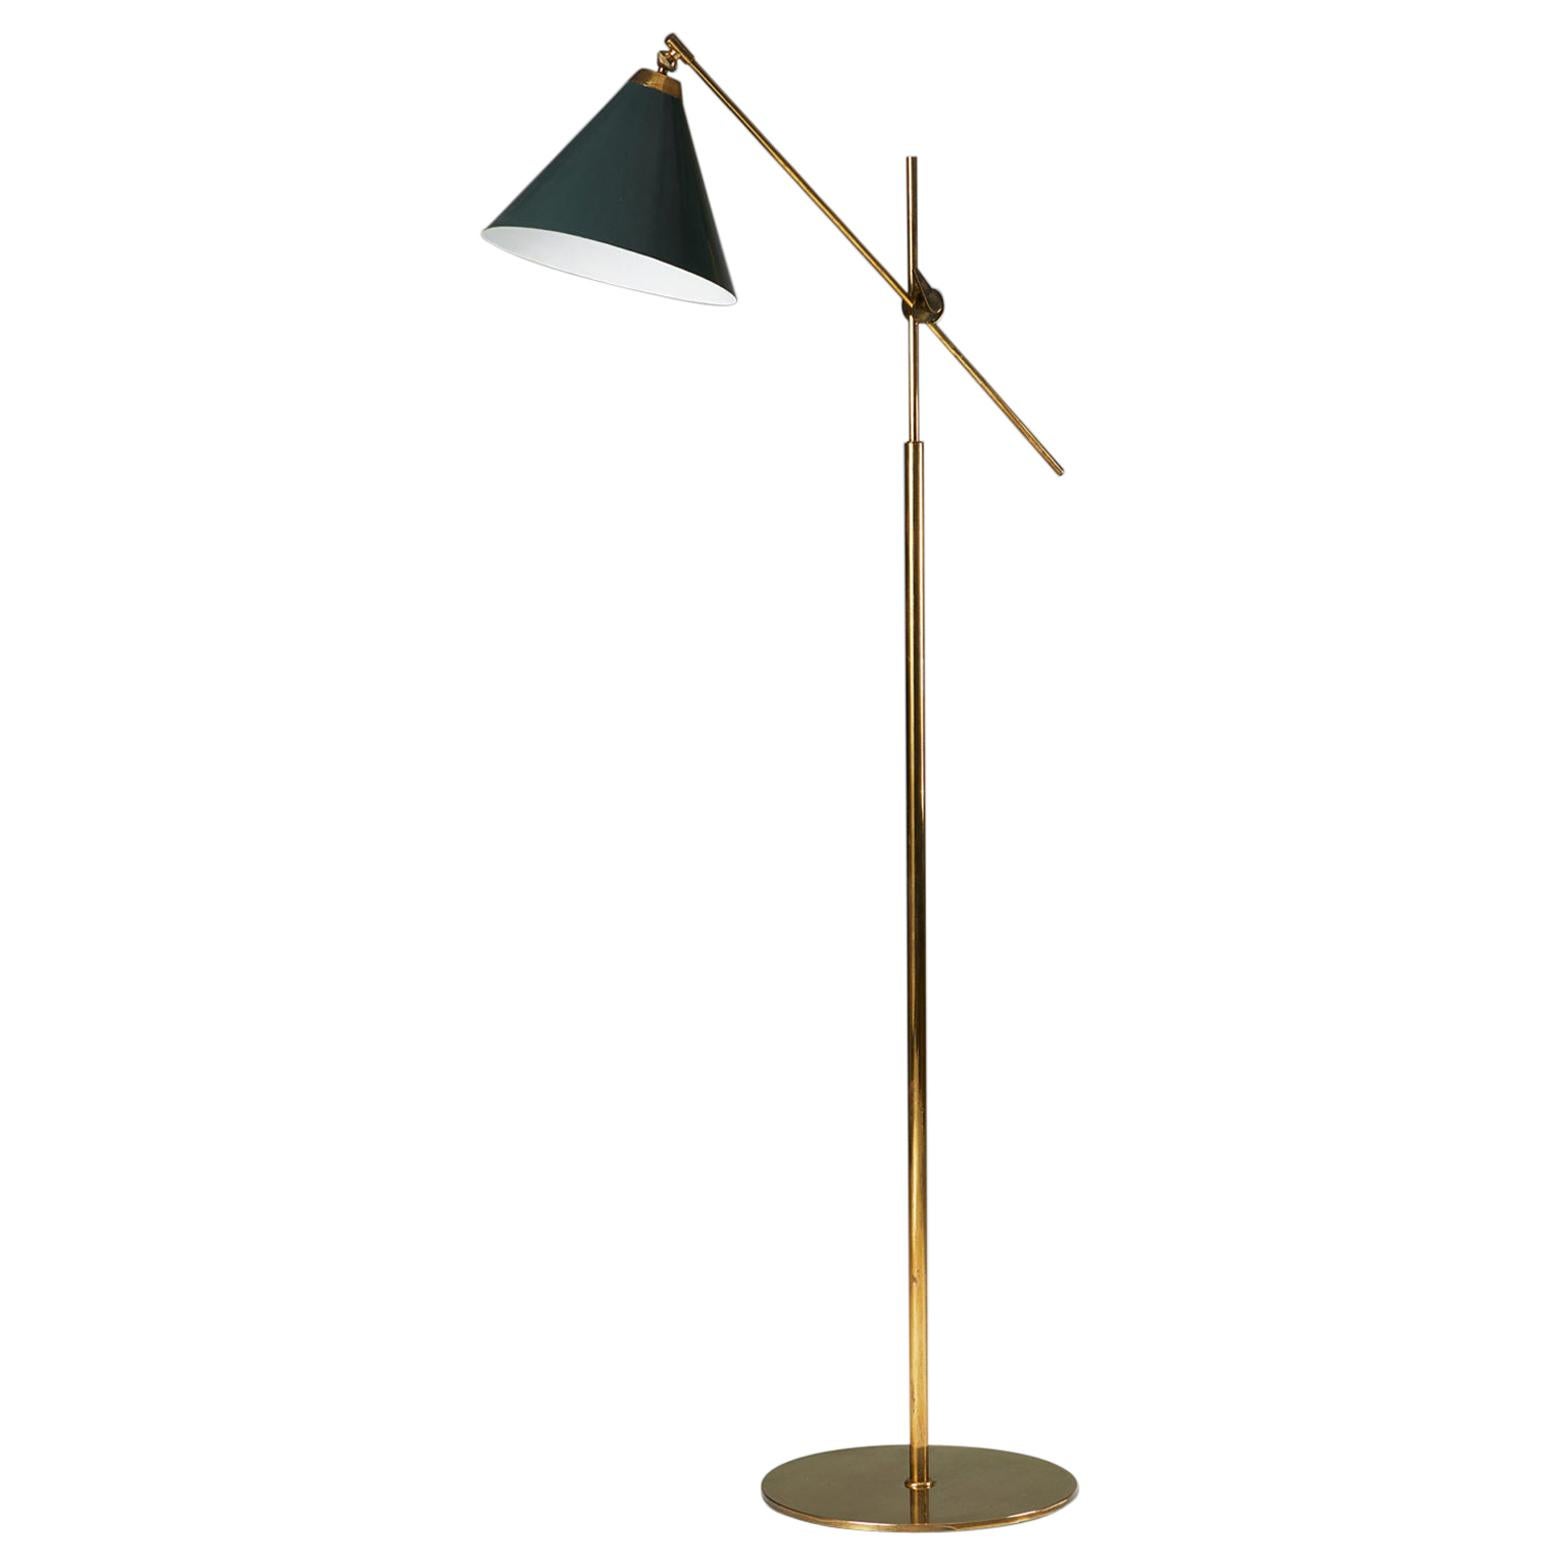 Floor lamp model 376 designed by TH. Valentiner for Poul Dinesen, Denmark. 1960s